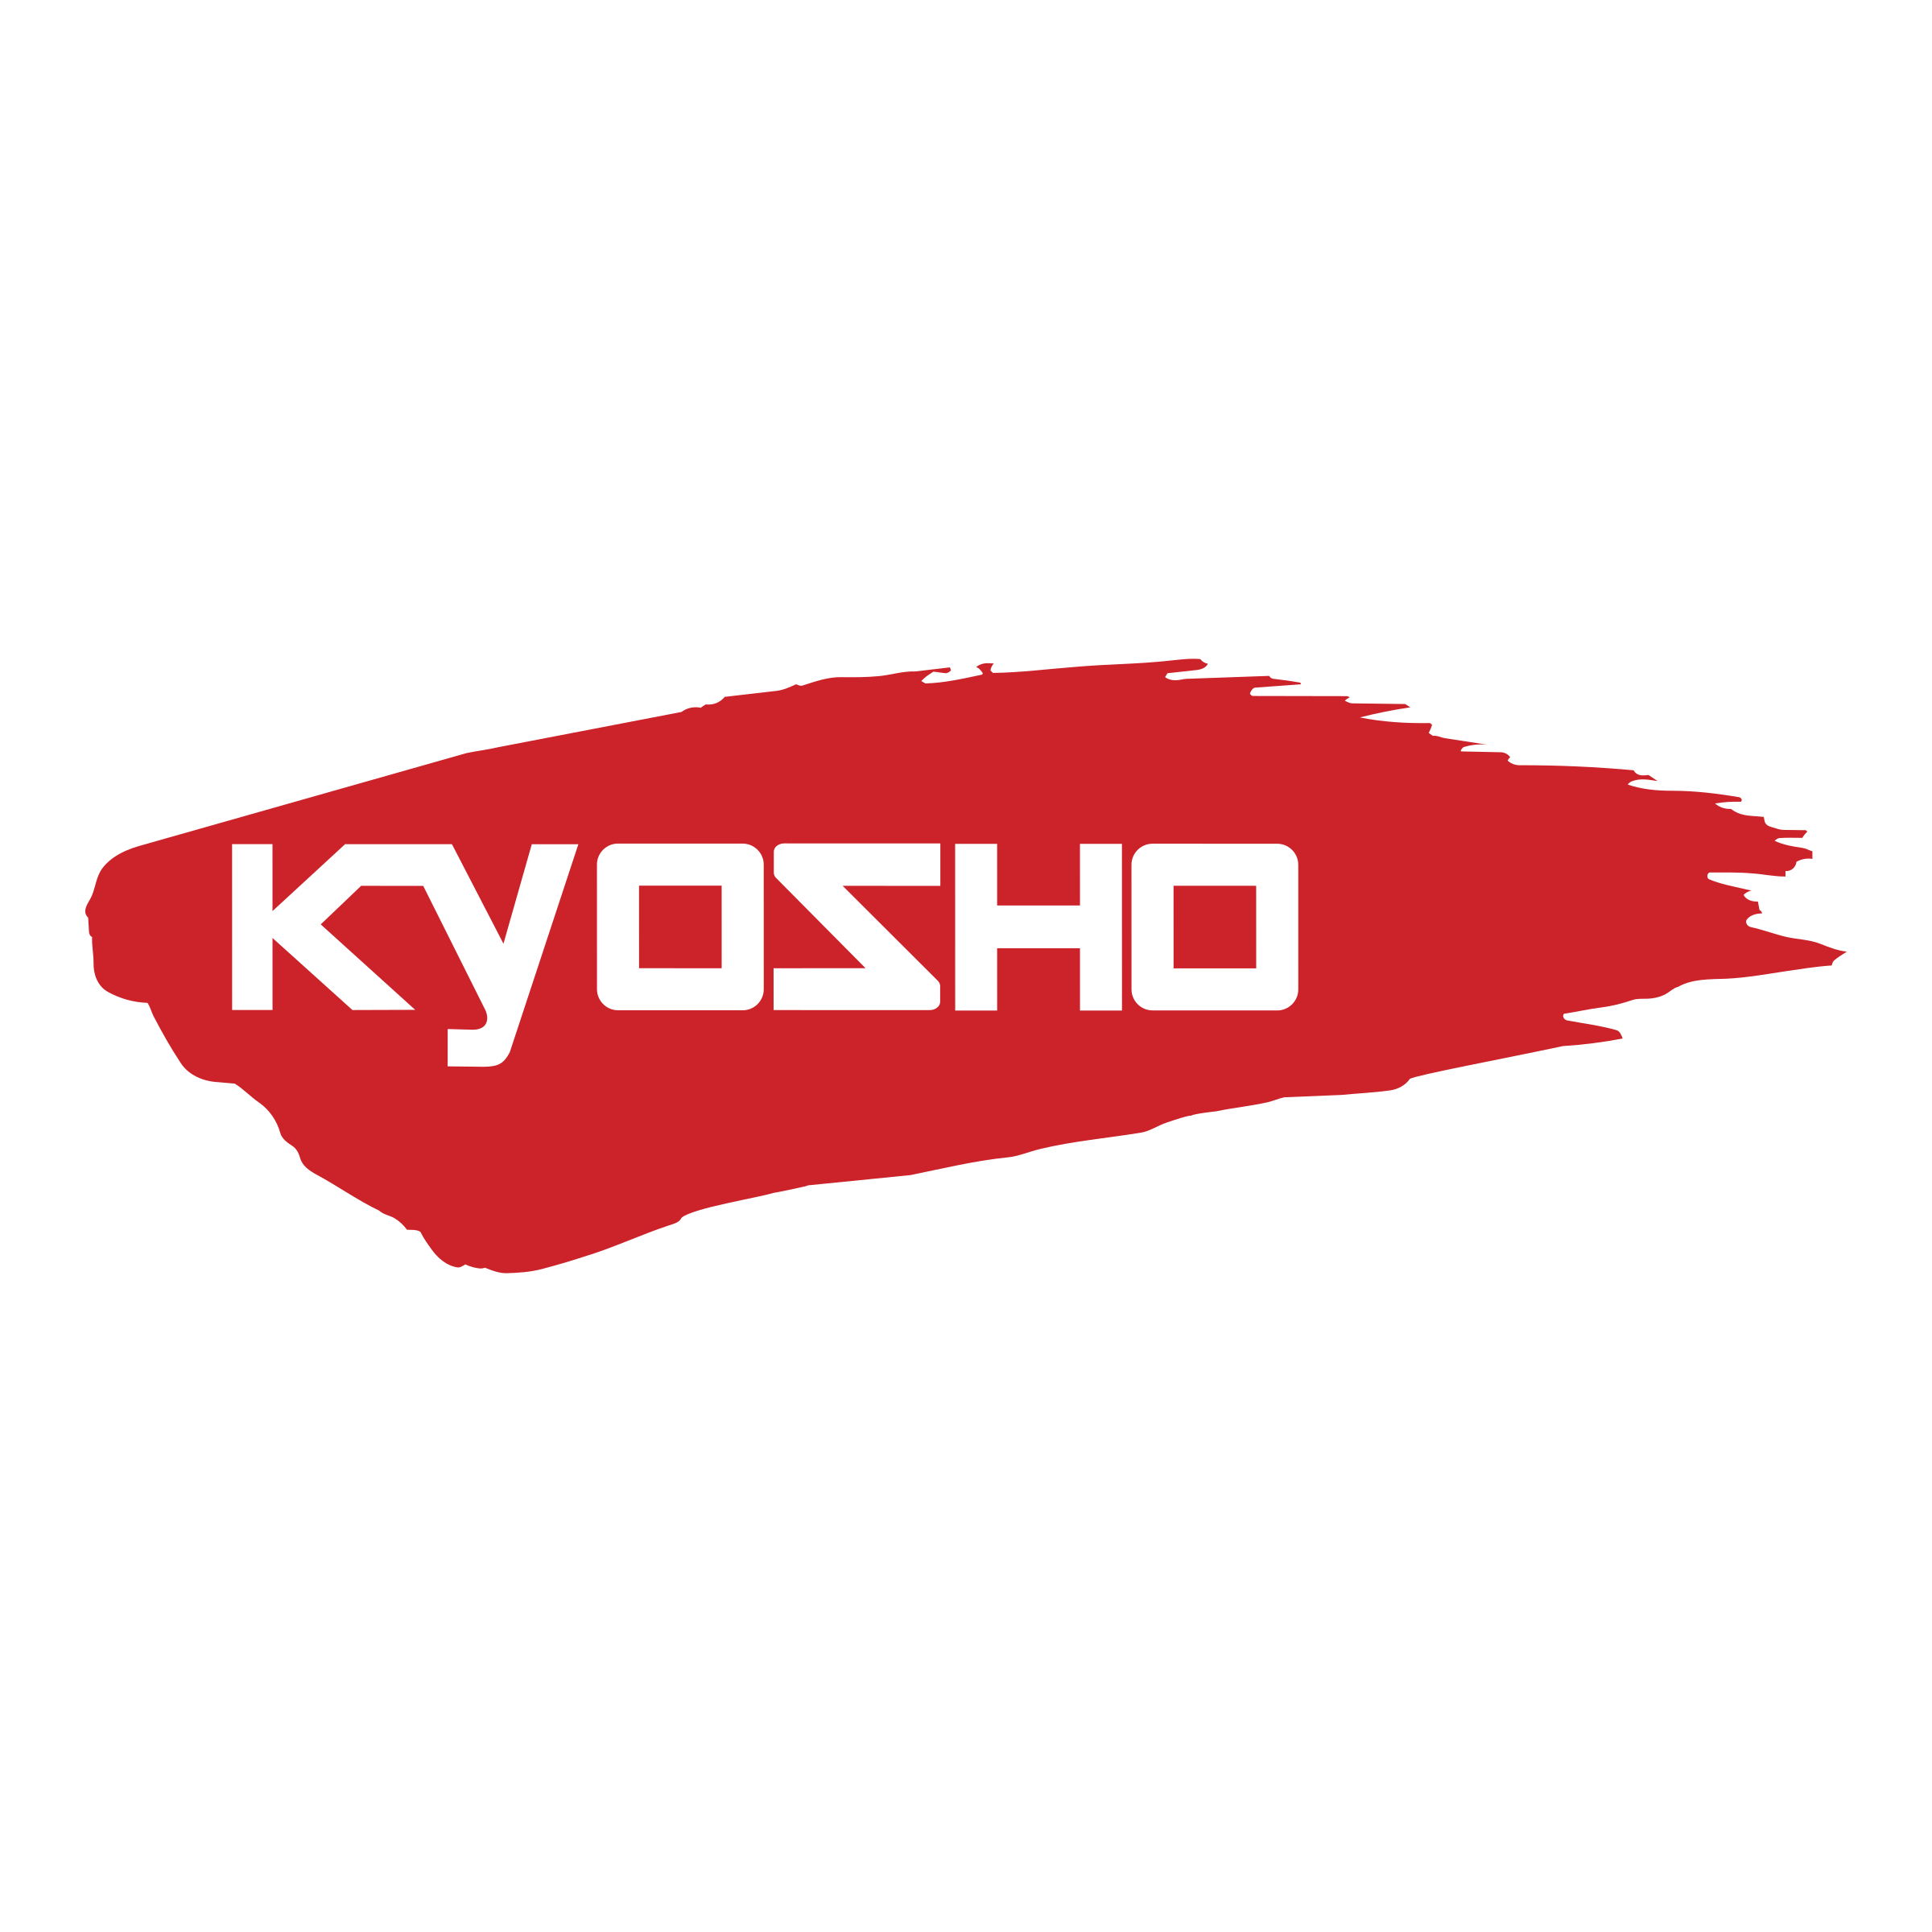 kyosho-logo-png-transparent.png